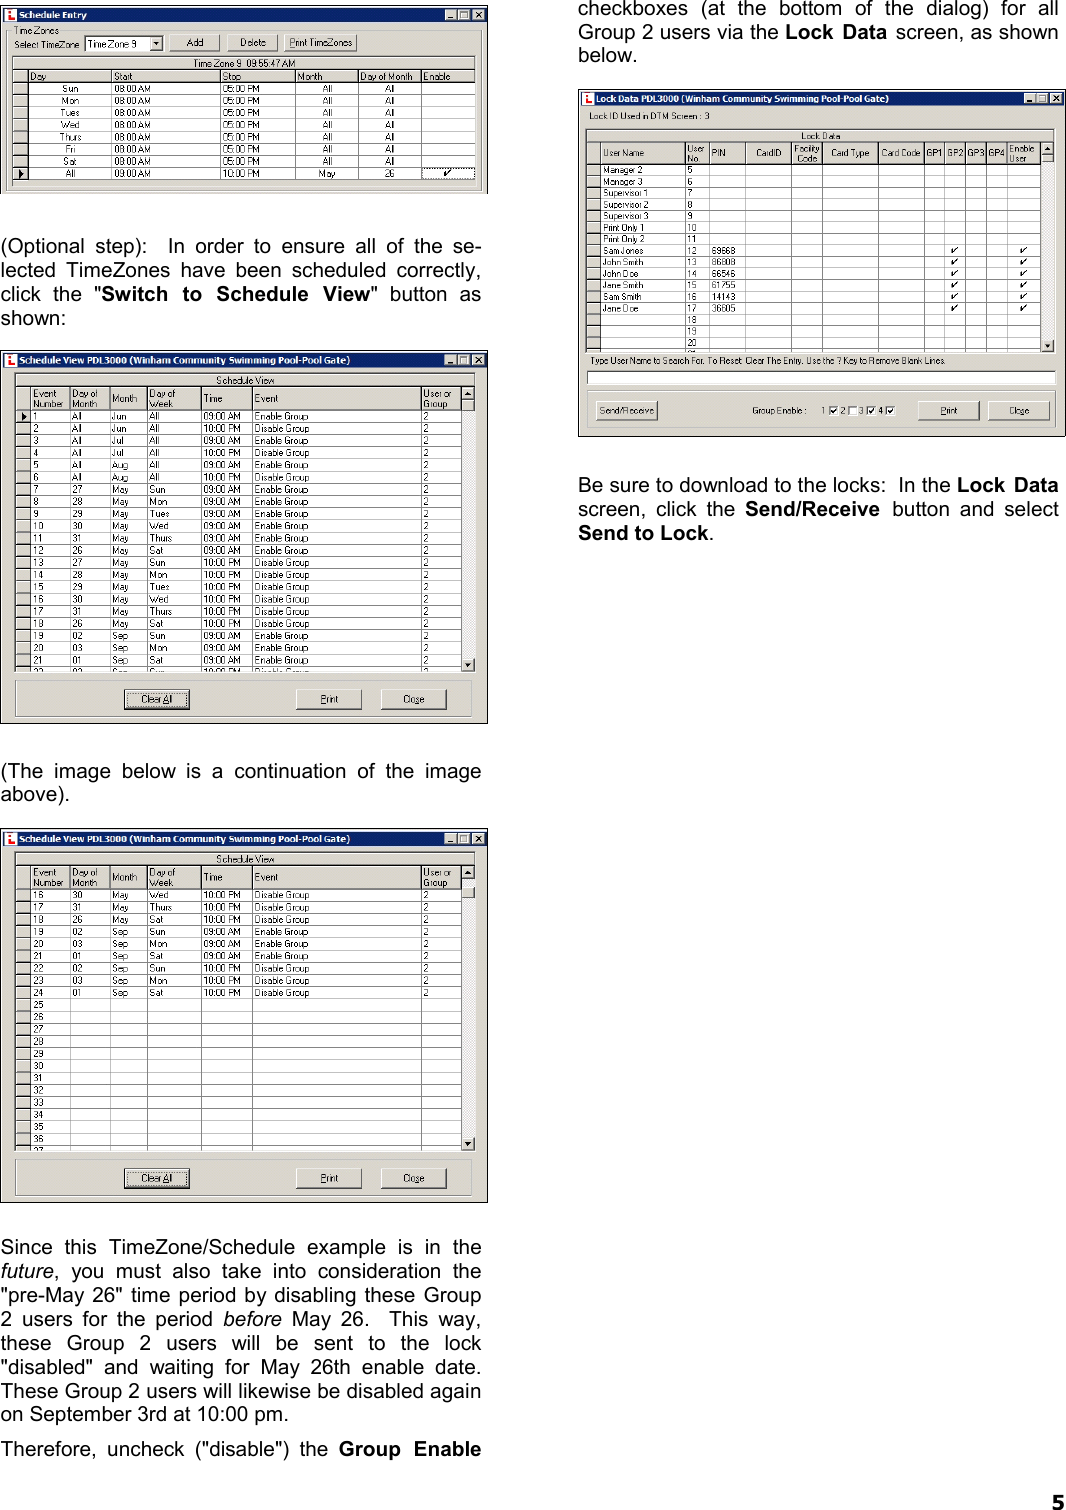 Page 5 of 8 - Alarm Lock DL-Wind_4.1x_TimeZoneSchedScen_WI1633A.05_ DL-Windows Timezone Scheduling Scenario Examples (v4.1x) DL-Wind 4.1x Time Zone Sched Scen WI1633A.05